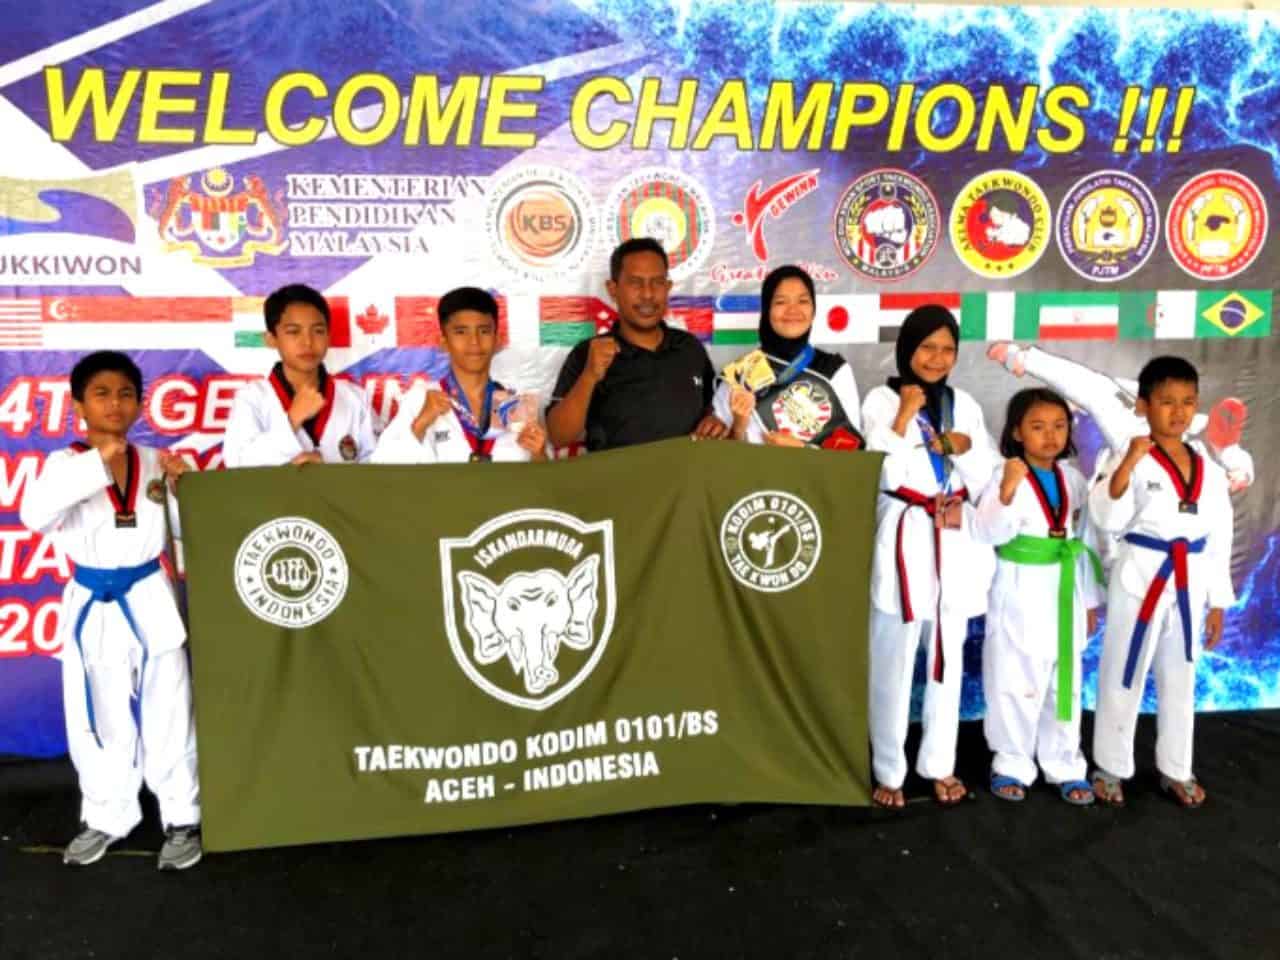 Atlet Dojang Kodim 0101/bs, Rebut Medali Emas Taekwondo Di Malaysia Open 2019